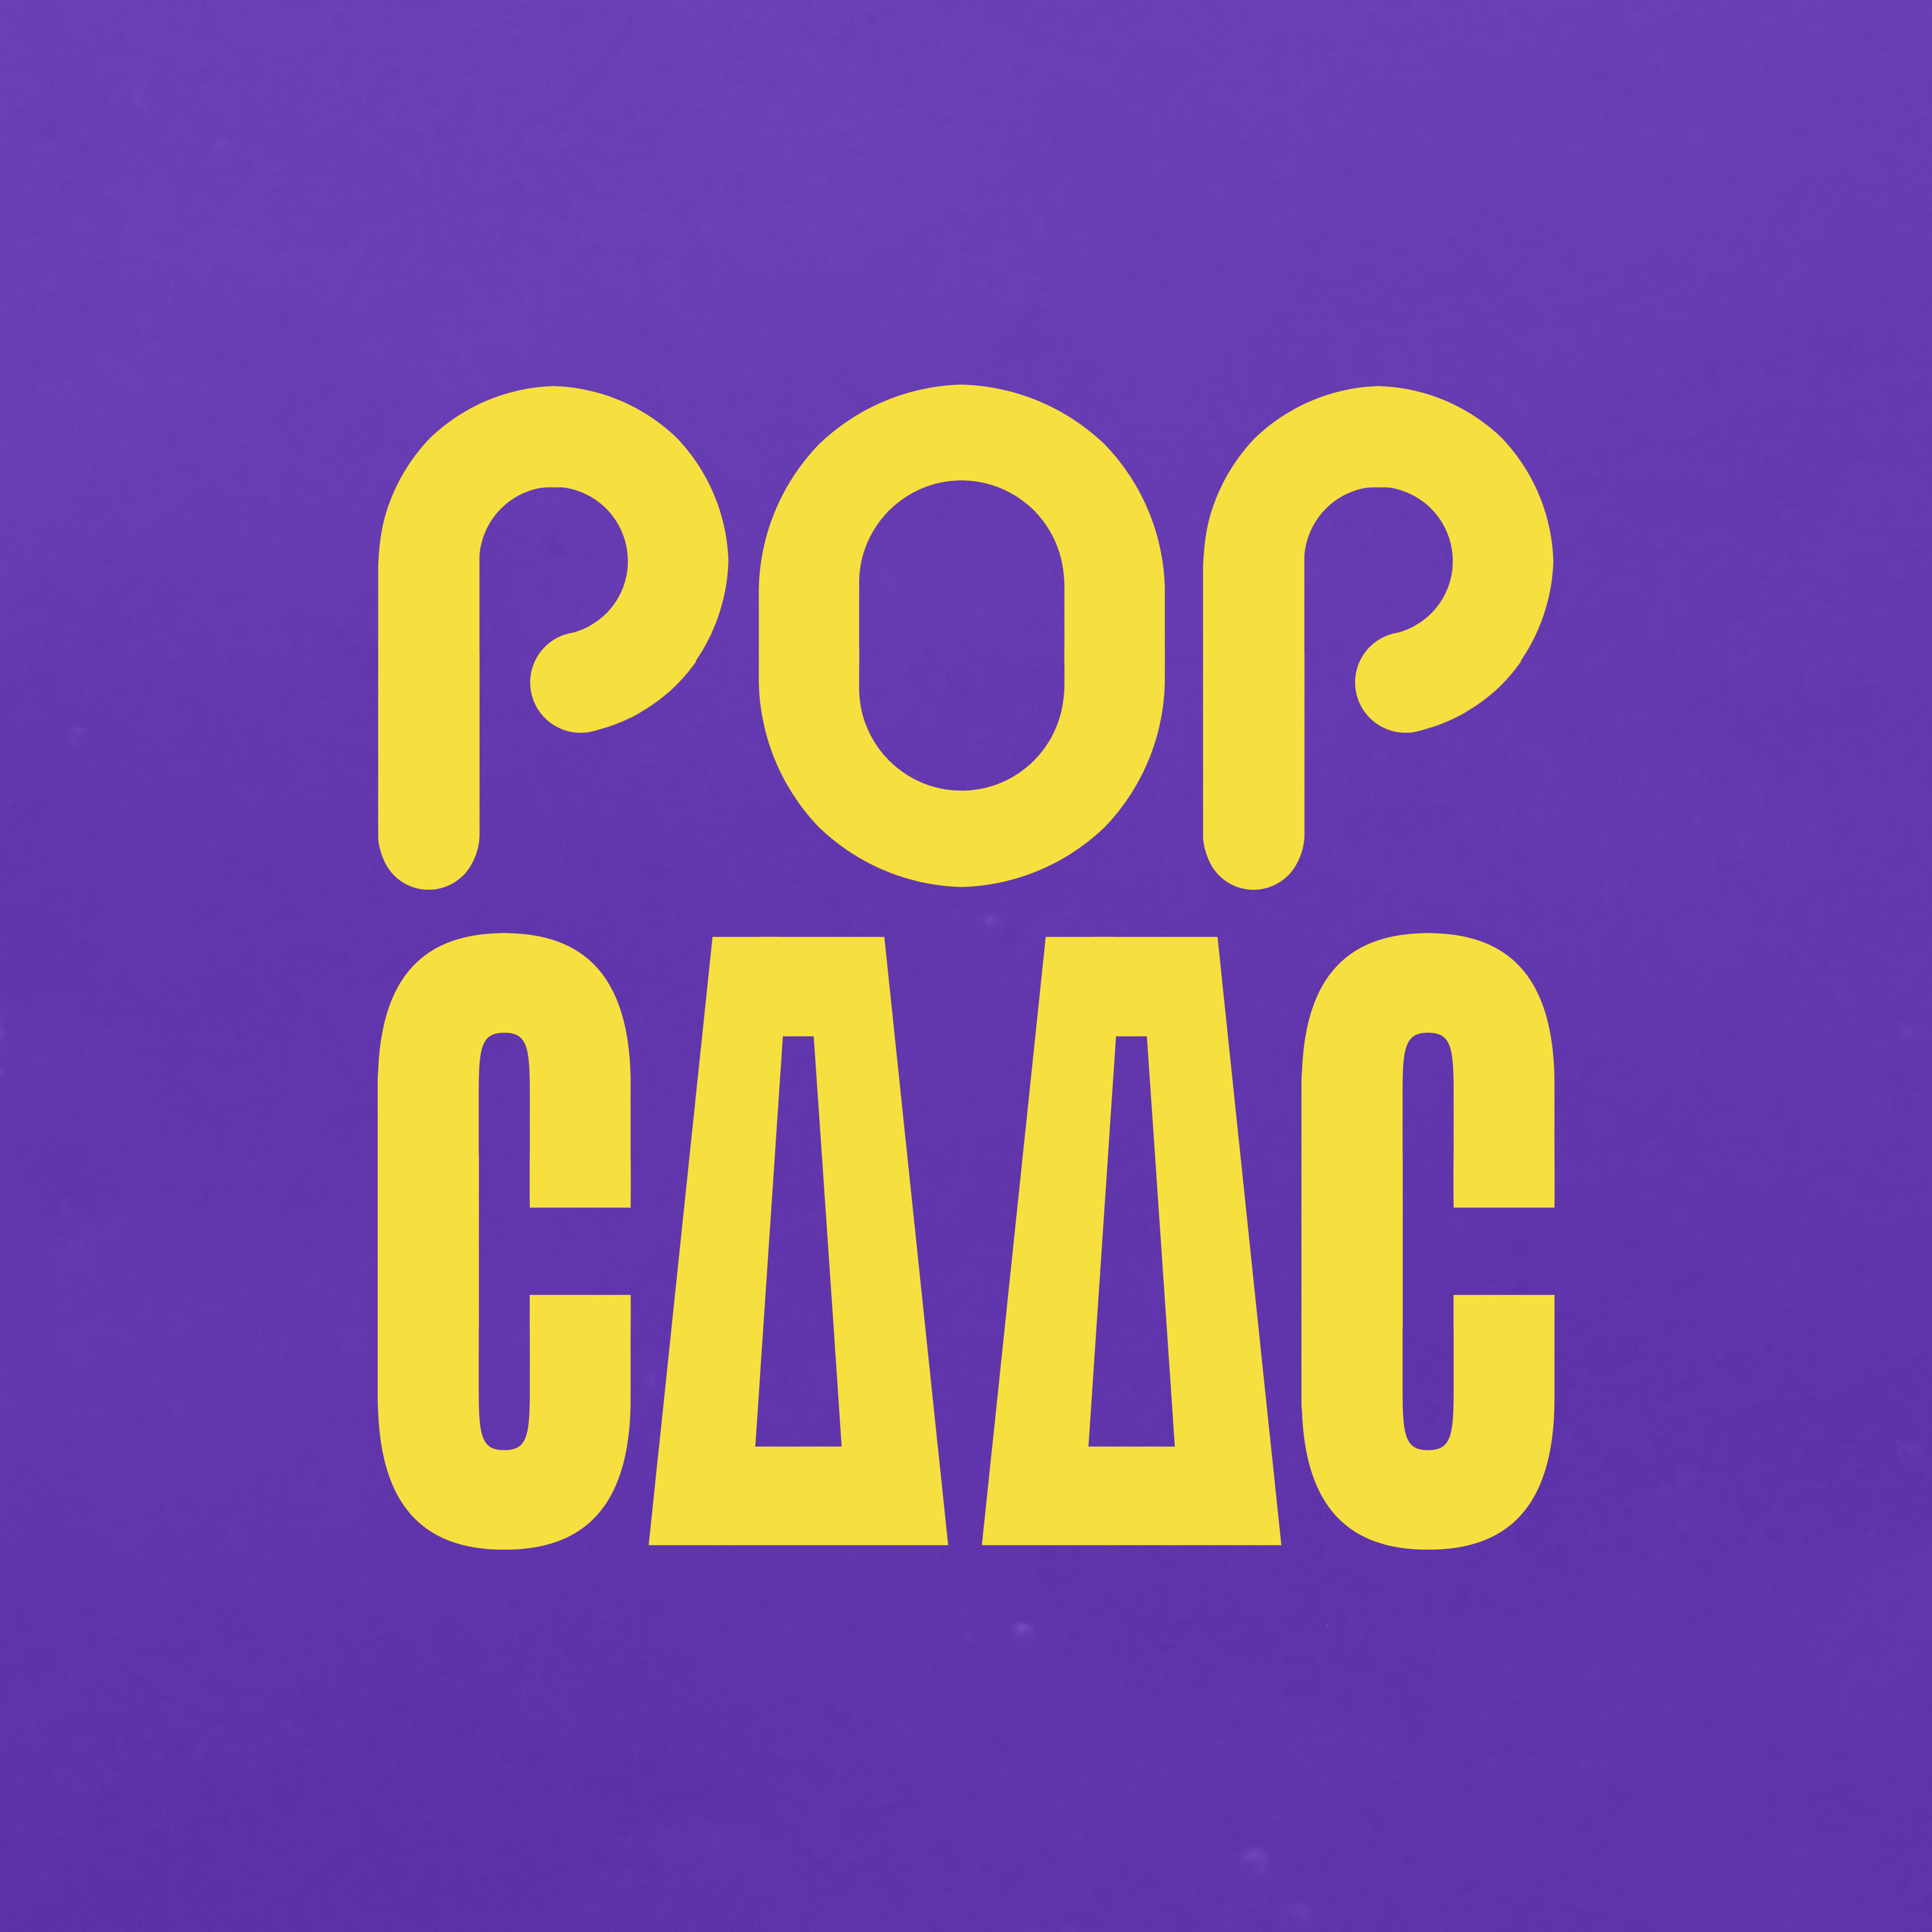 POP CAAC 2021